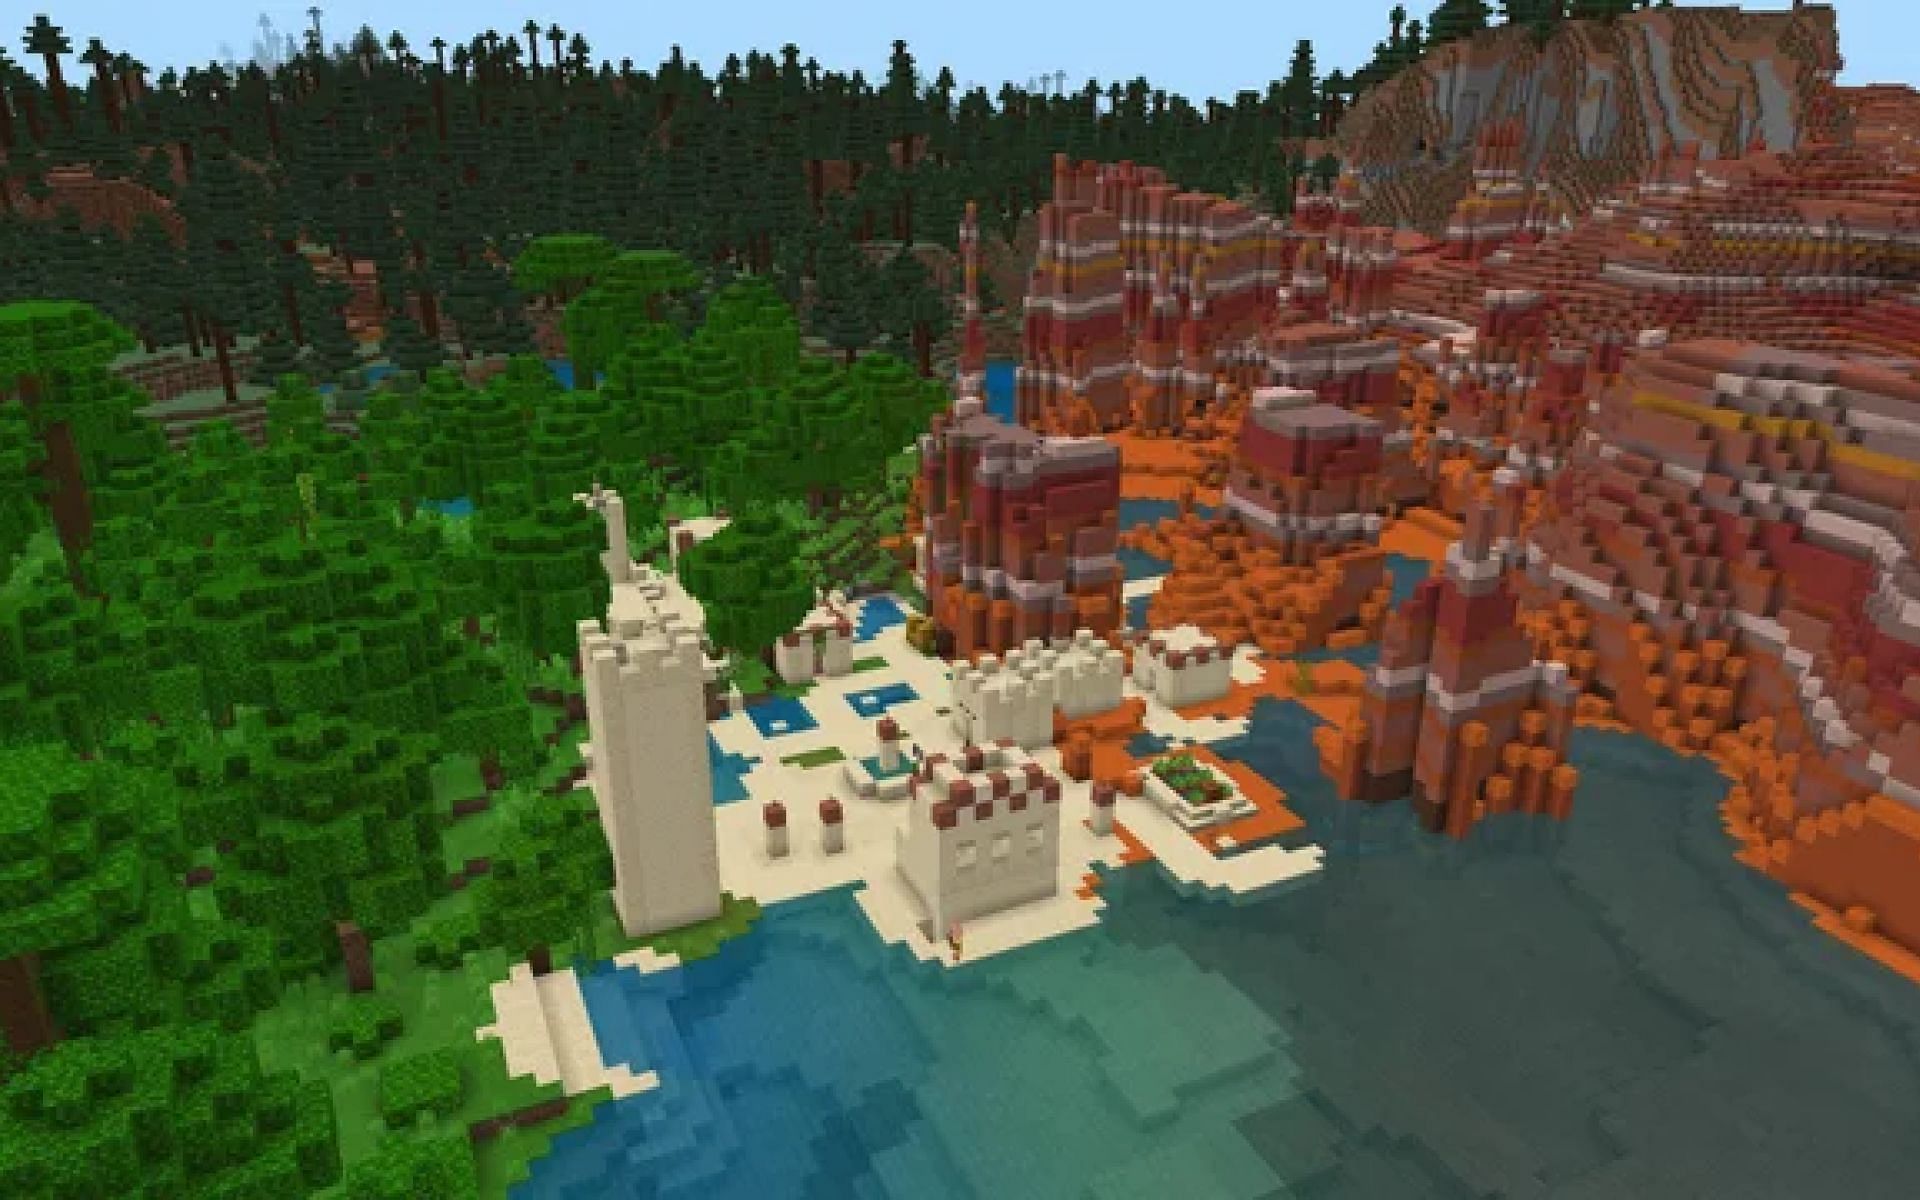 A desert village in Minecraft (Image via u/Ricecake1111113, Reddit)